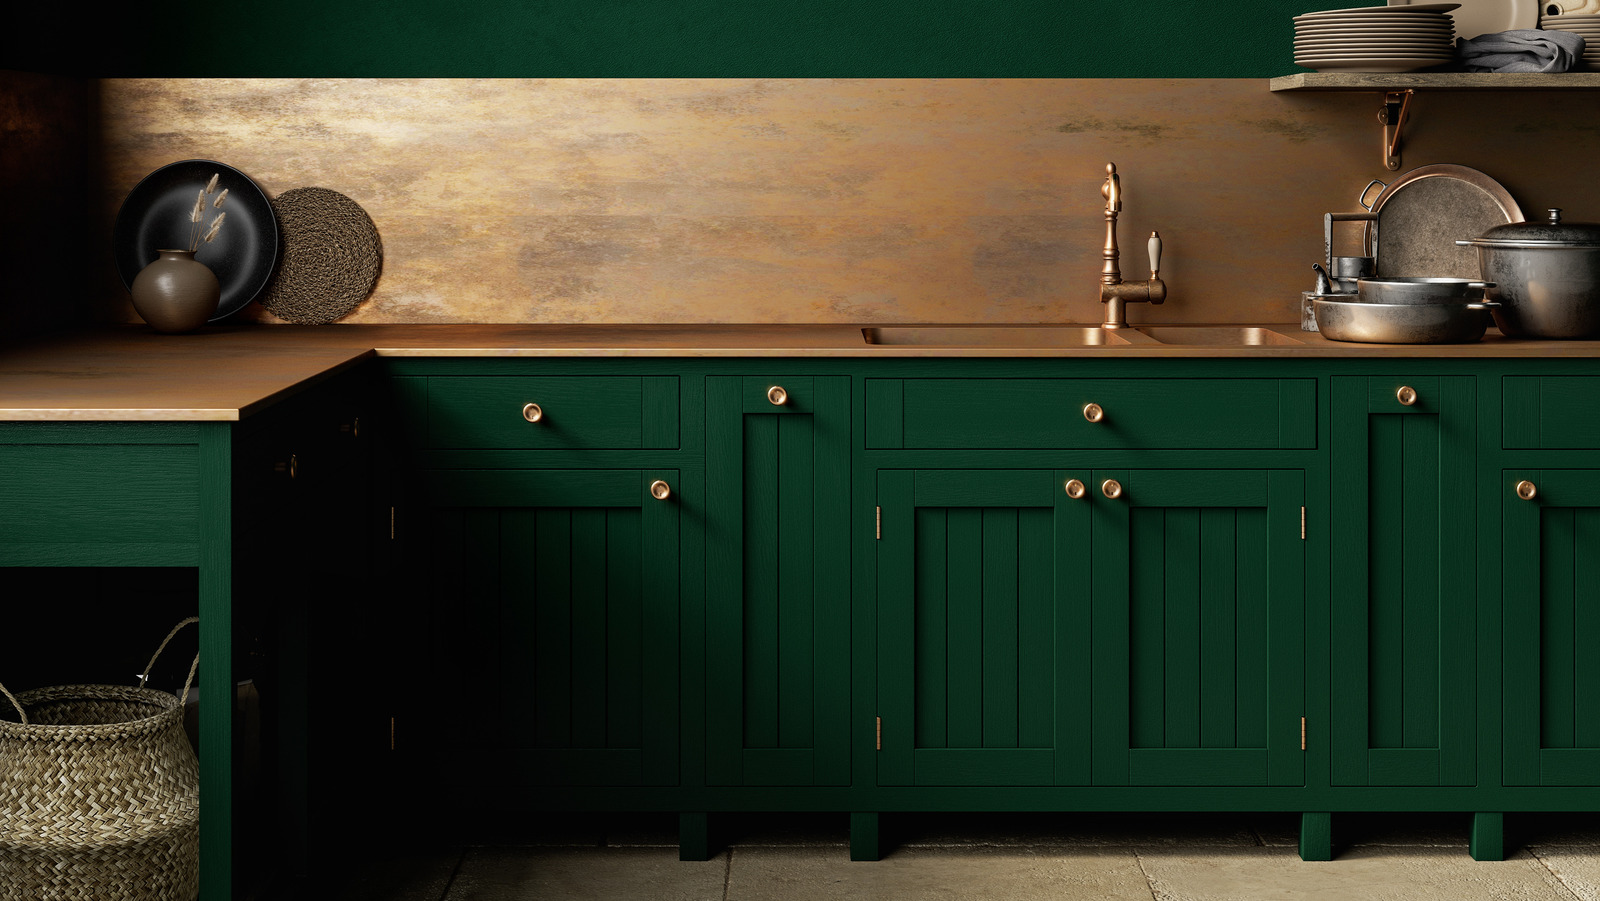 sage cabinets and tile backsplash  Green kitchen cabinets, Beautiful  kitchen cabinets, Sage green kitchen